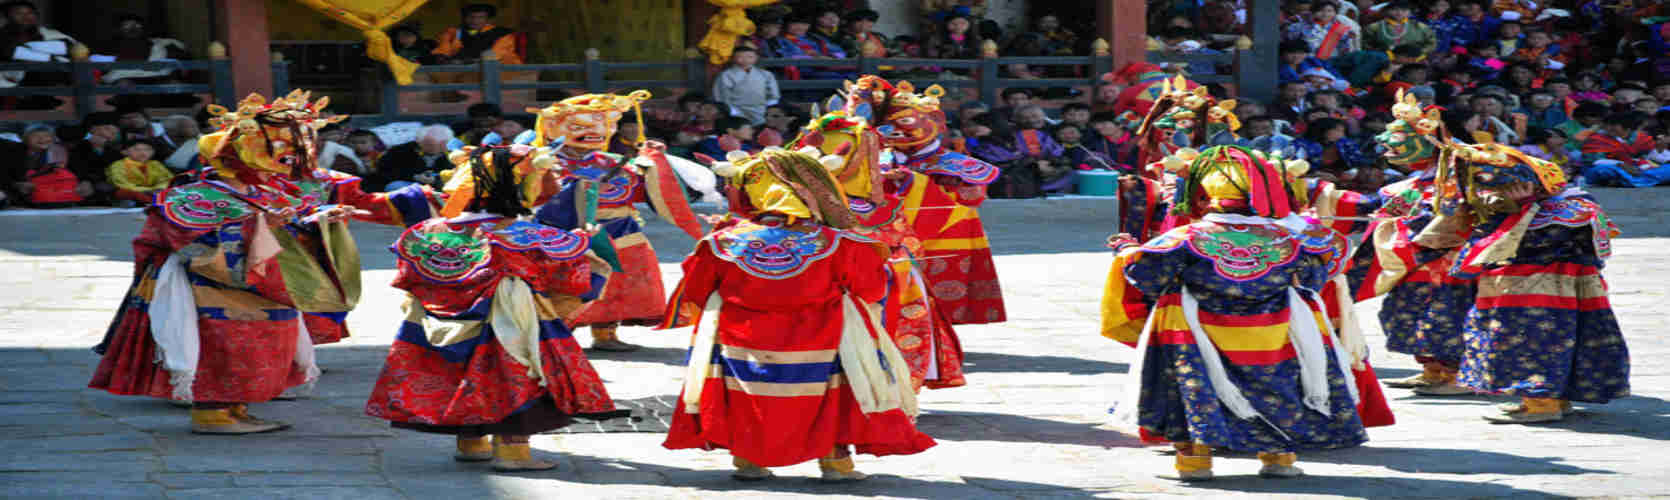 Cultural tours in Bhutan